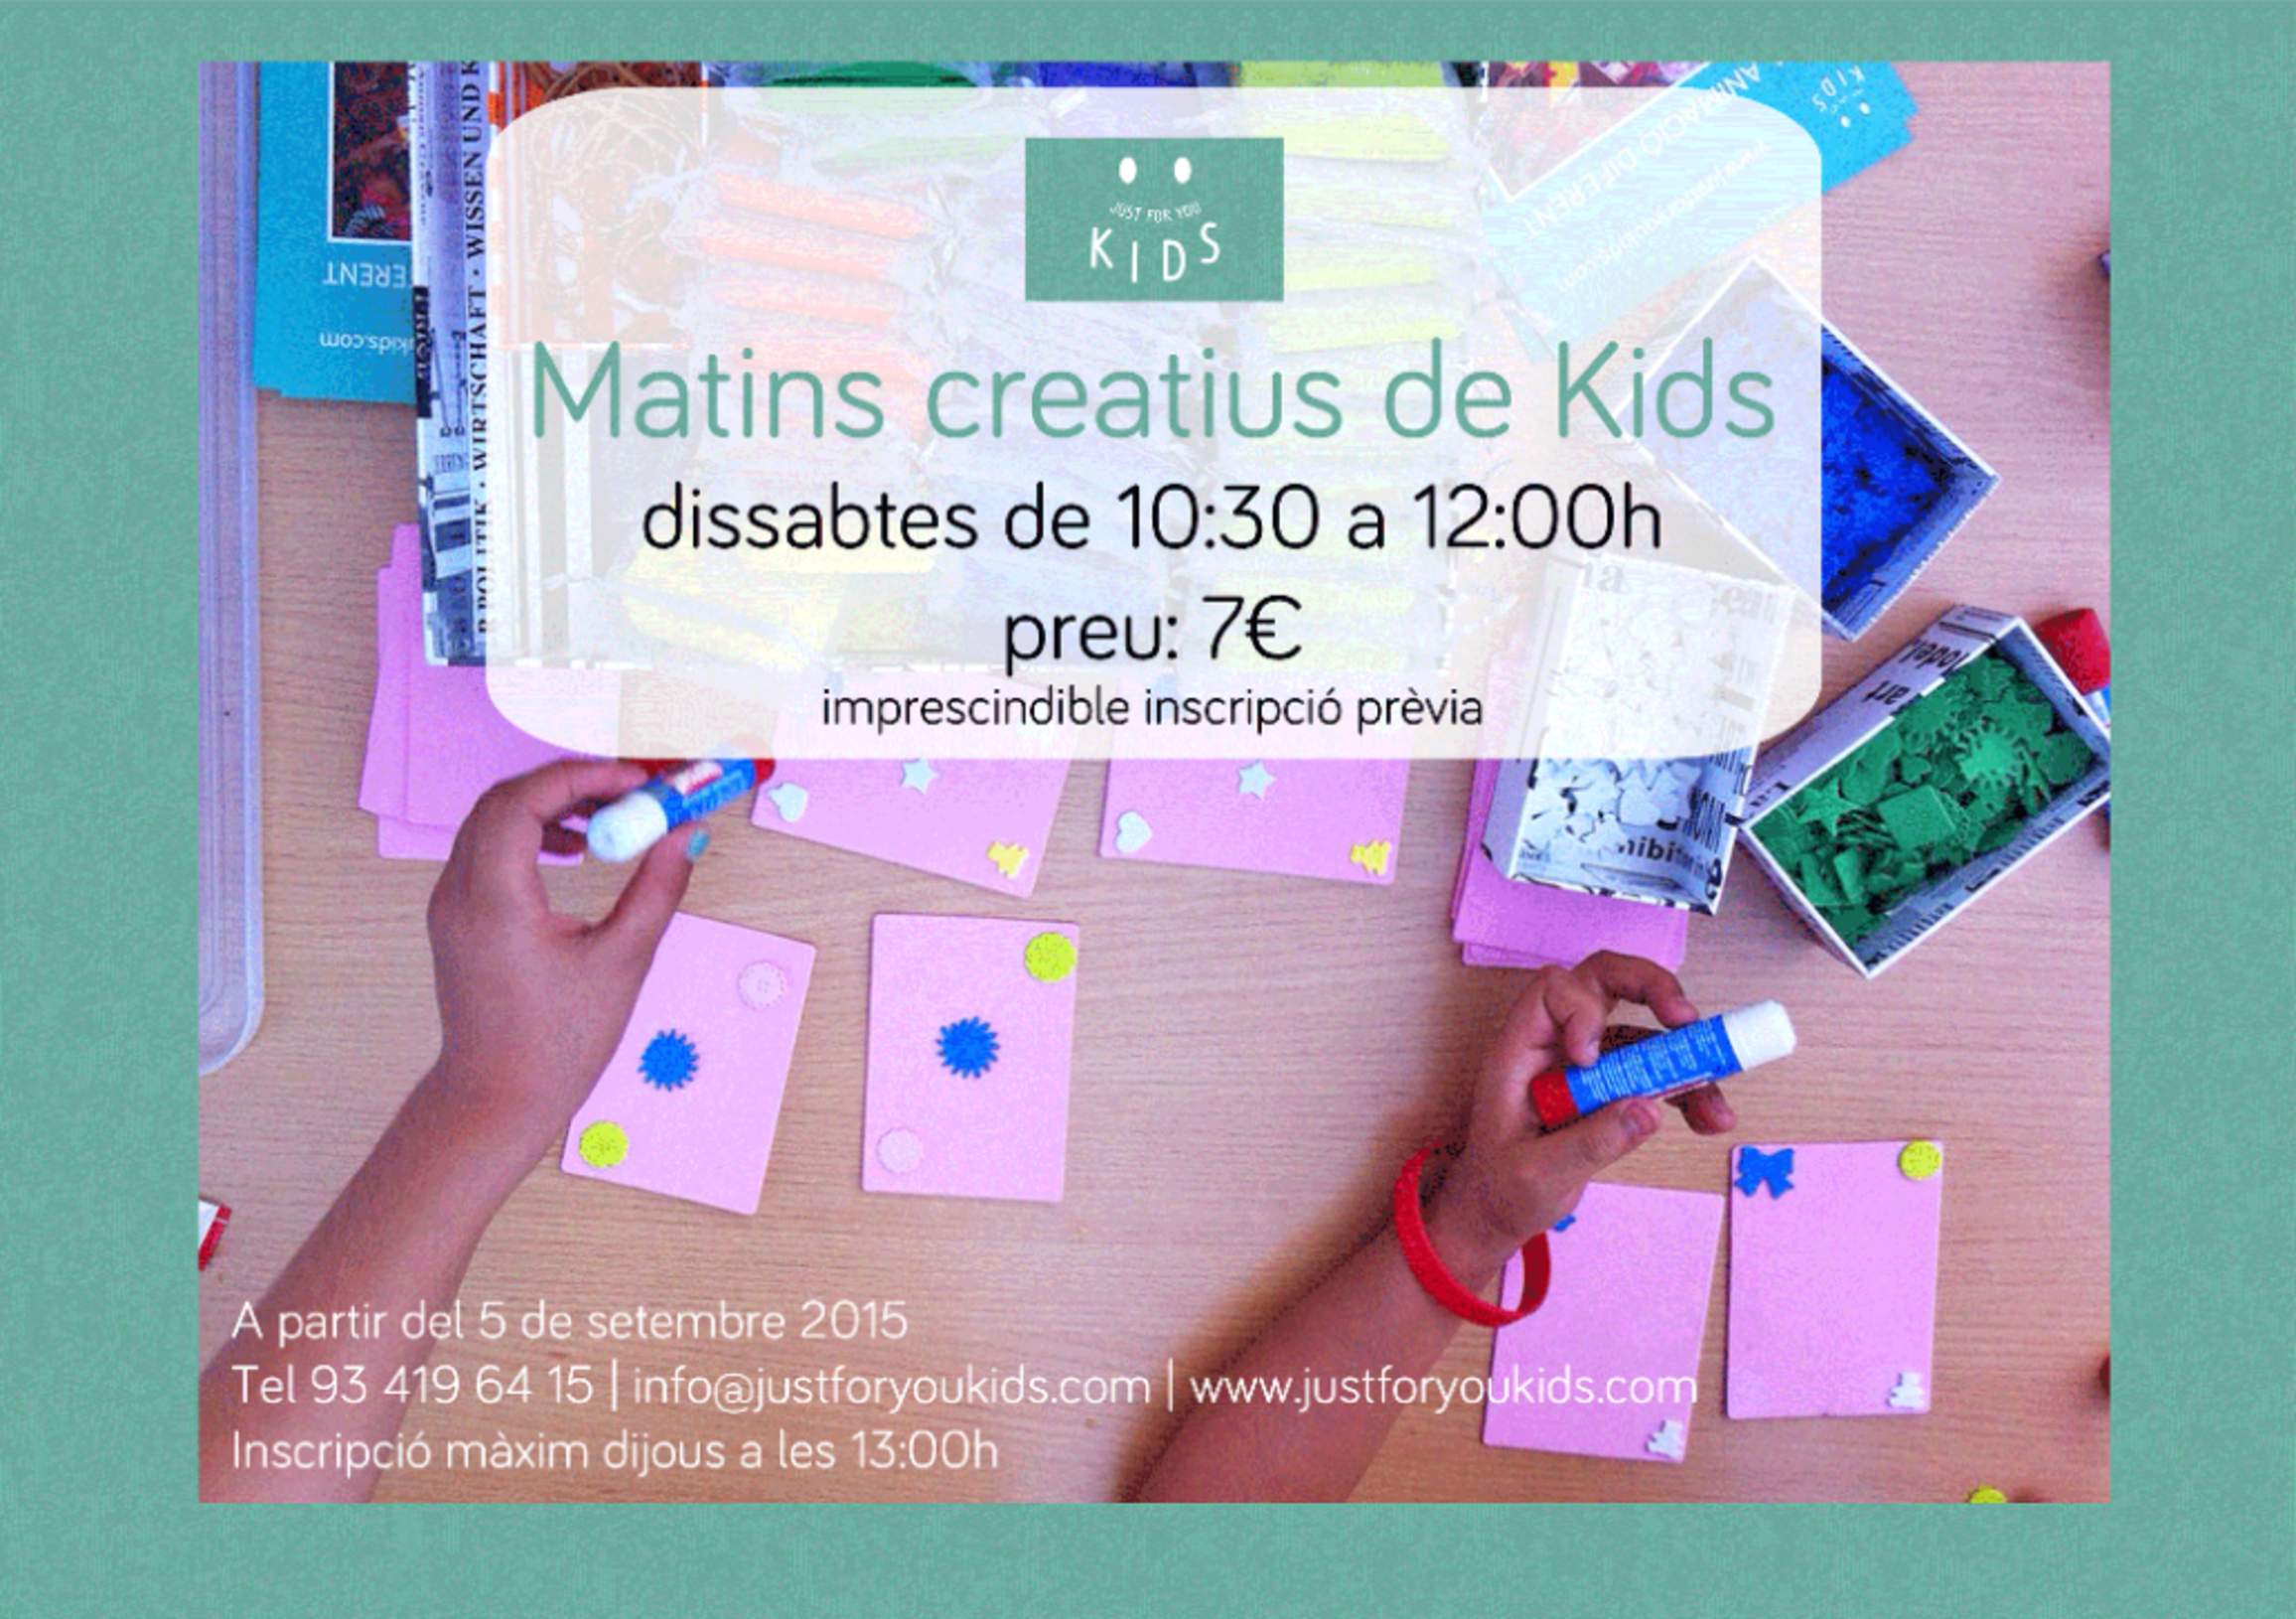 Tallers manualitats a barcelona: Matins creatius amb nens